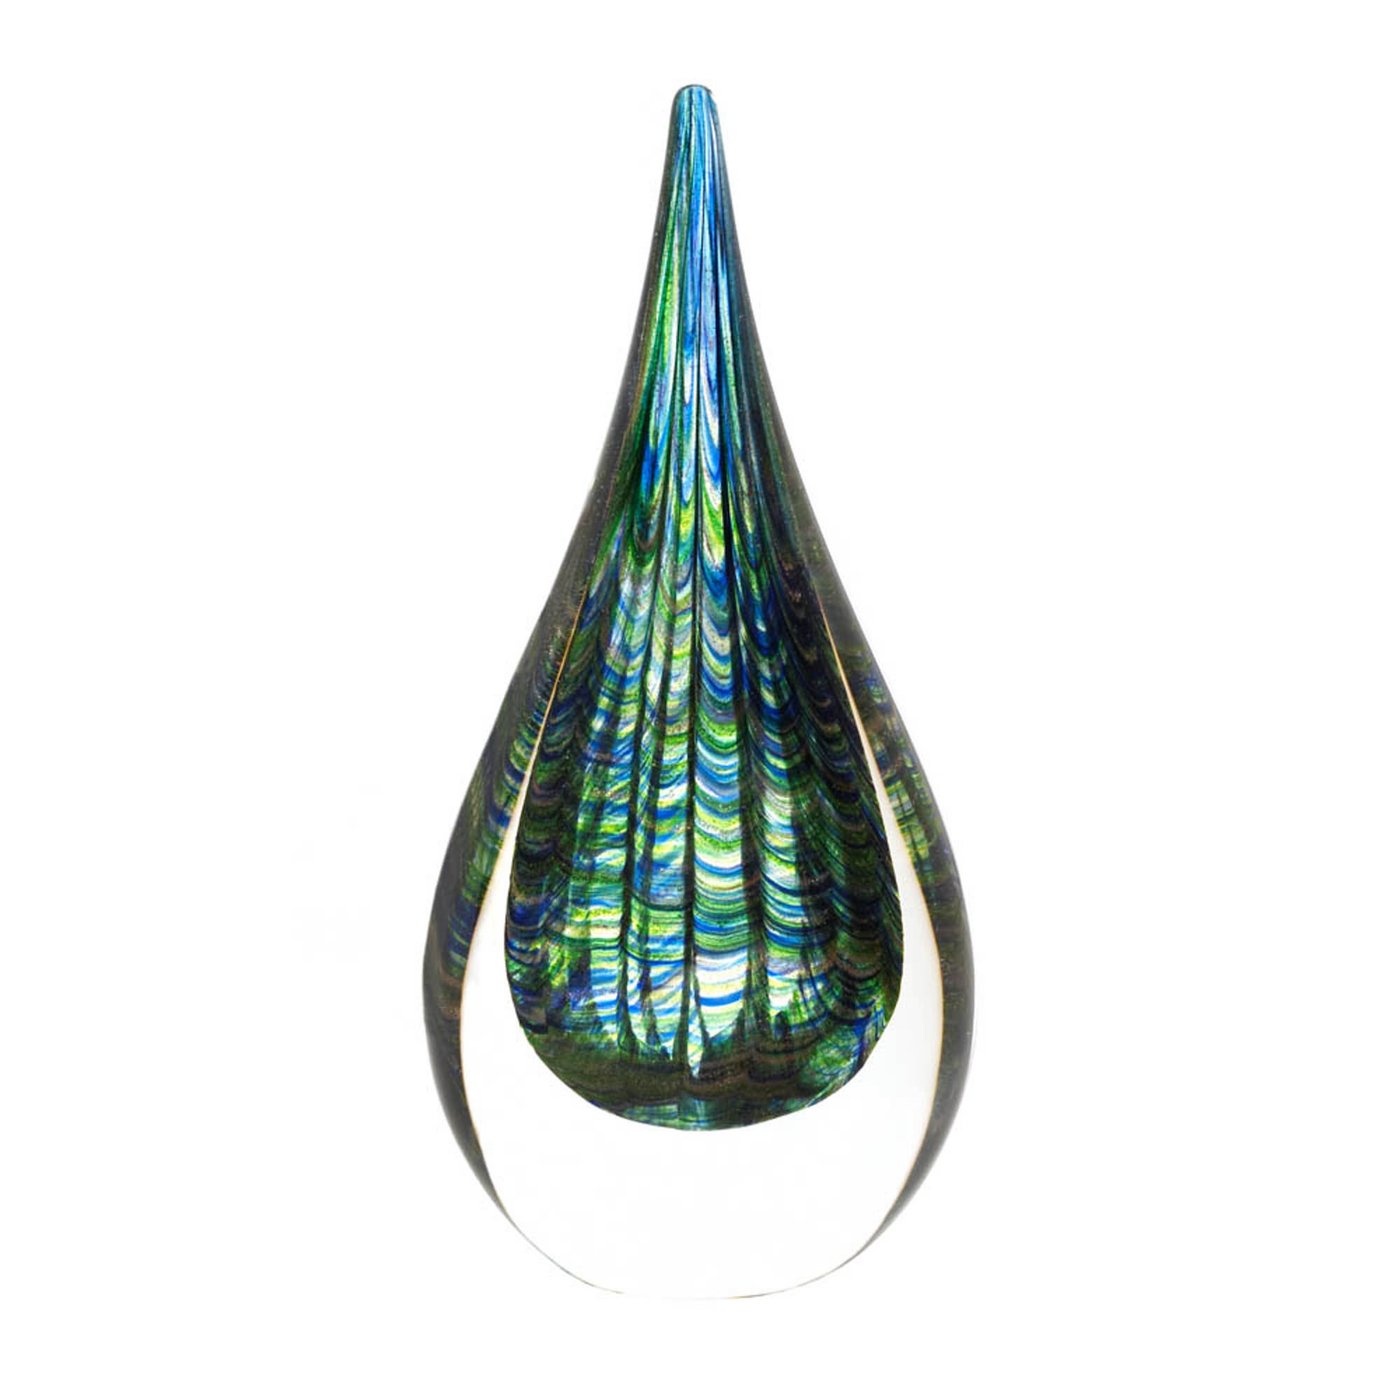 Peacock Inspired Art Glass Sculpture